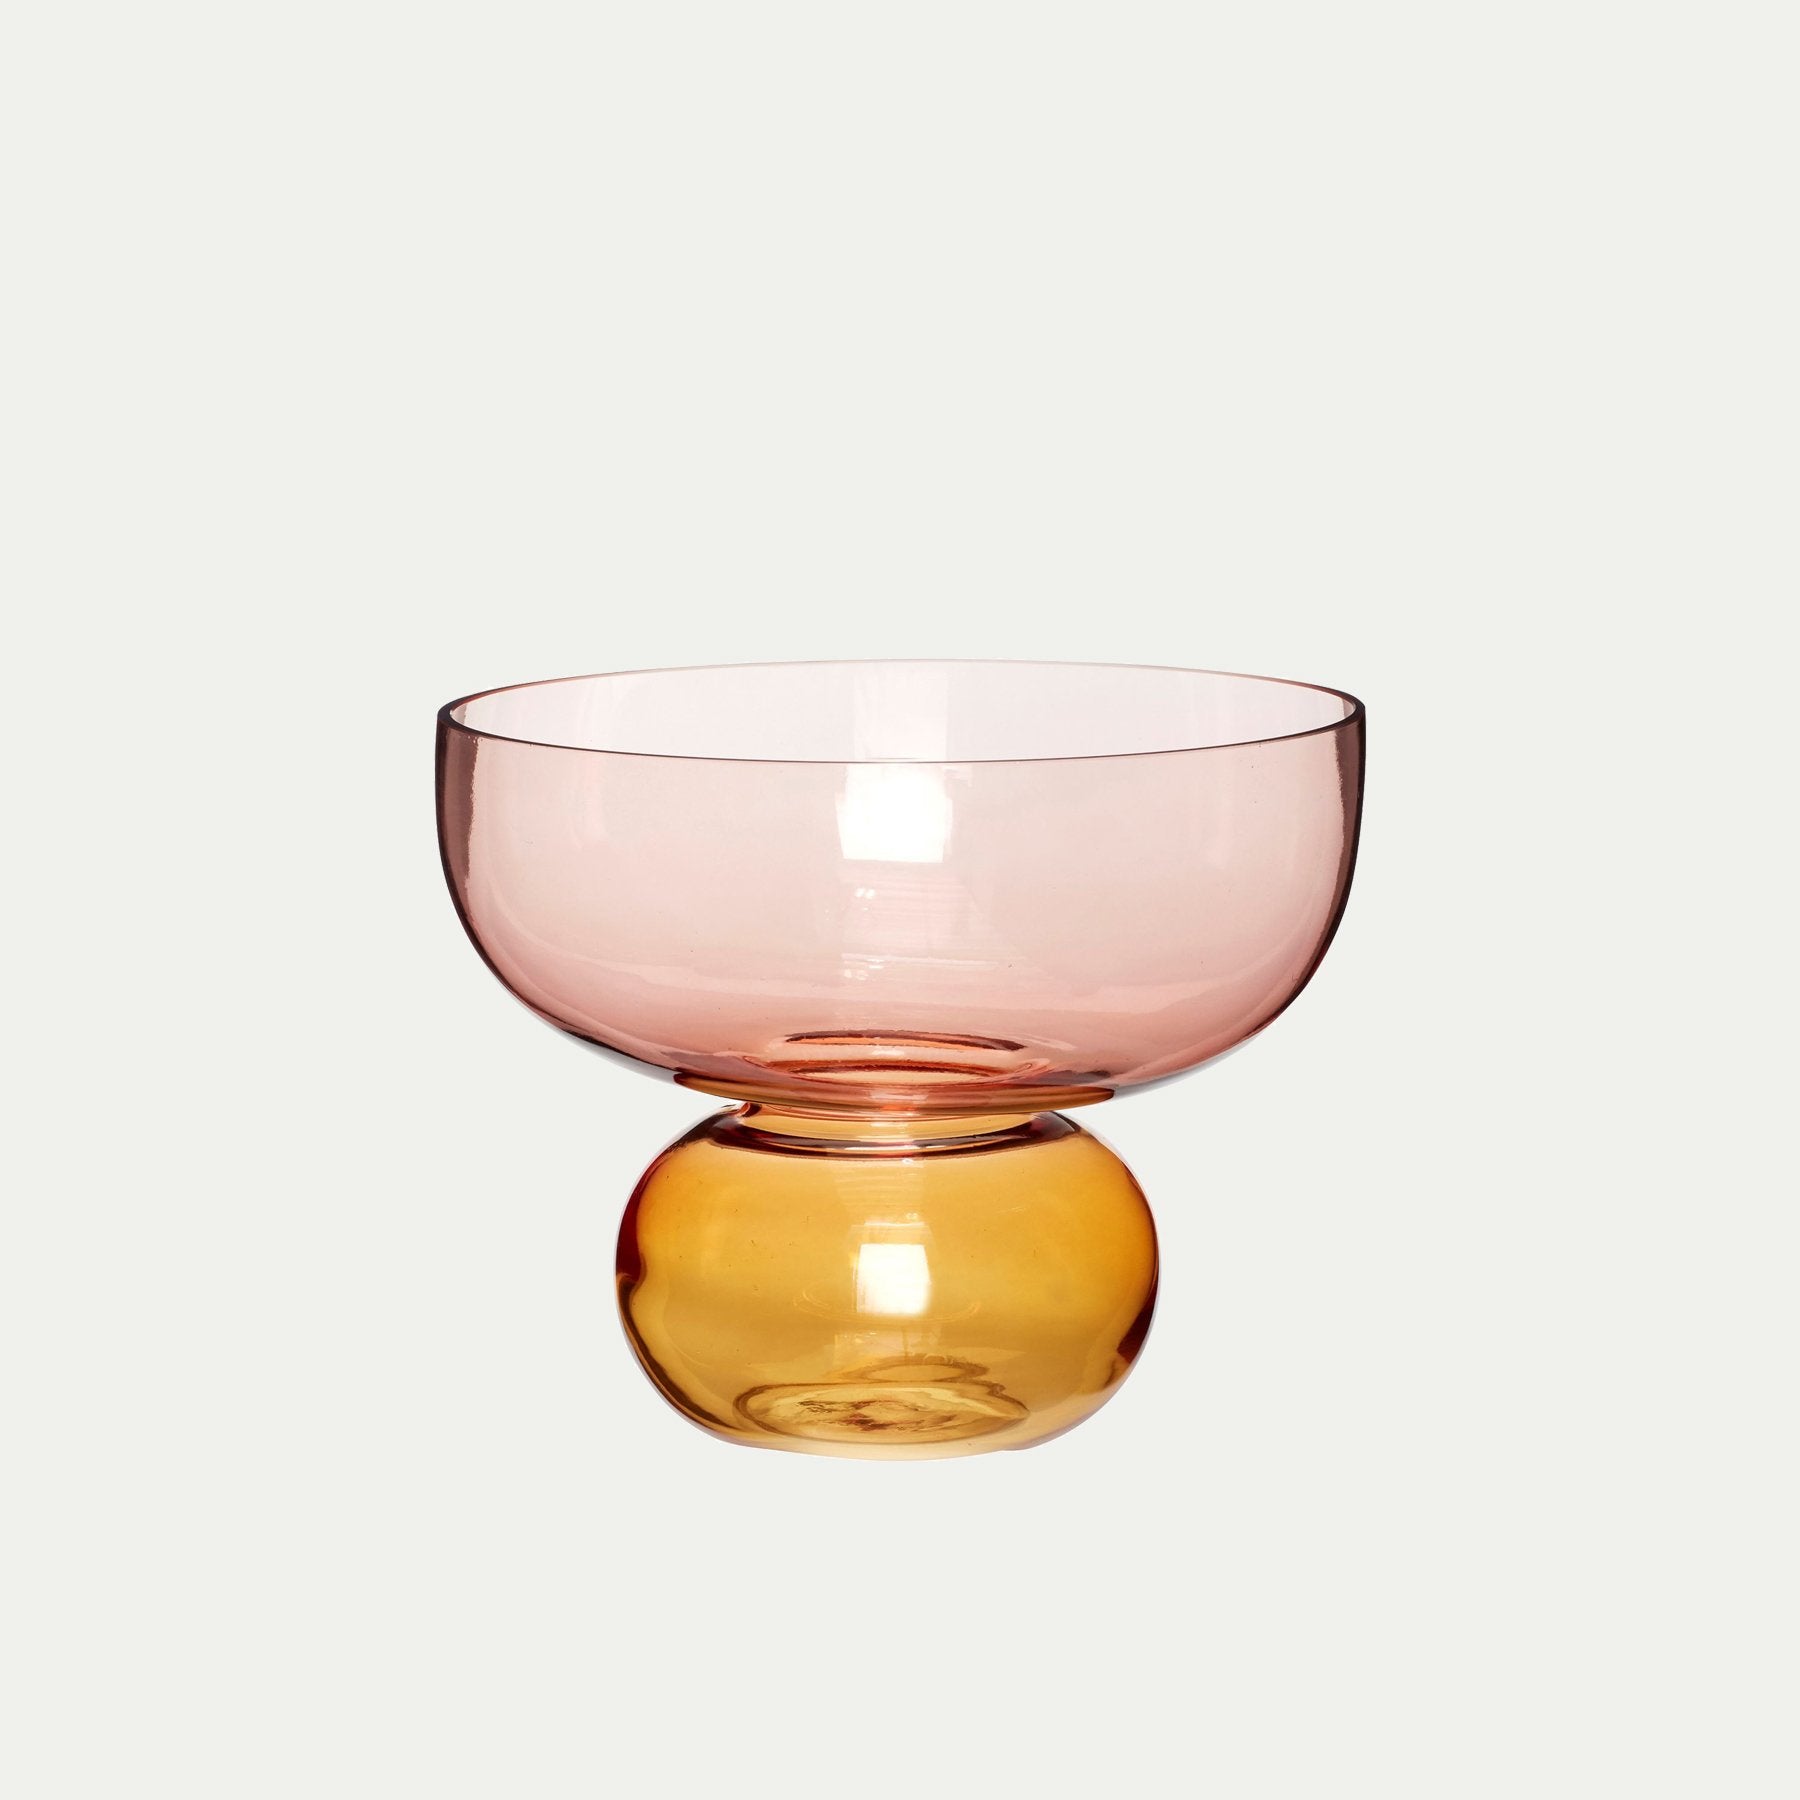 Hubsch Interior Nordic designer round bowl vase in pink and orange amber glass on white background